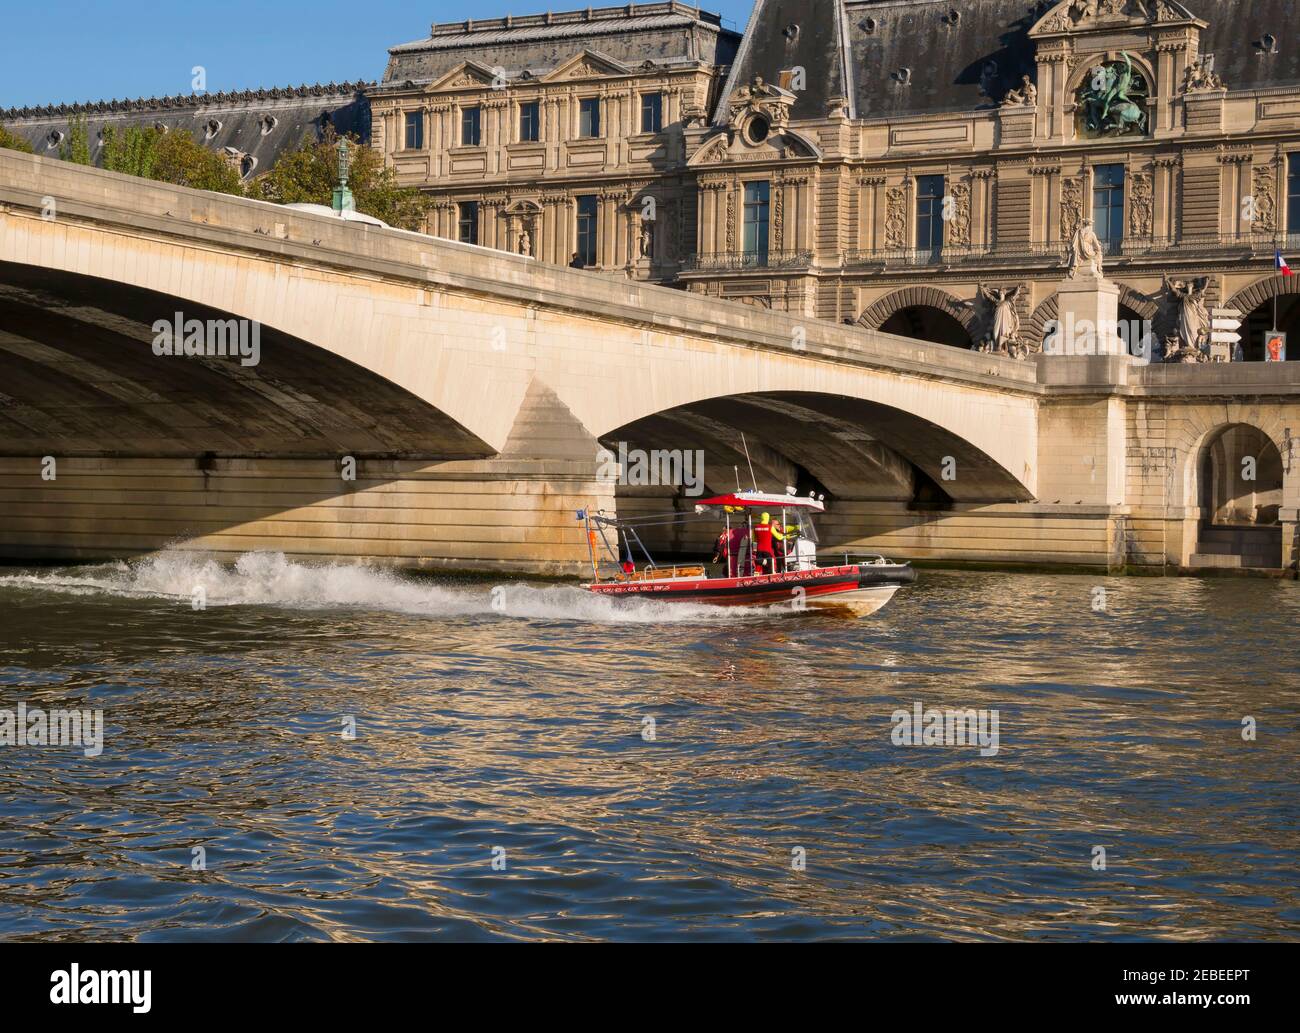 Le bateau de sauvetage du Service des incendies sur la Seine, Paris. Les pompiers sur un bateau de sauvetage pratique sur la Seine en face du Louvre. Banque D'Images